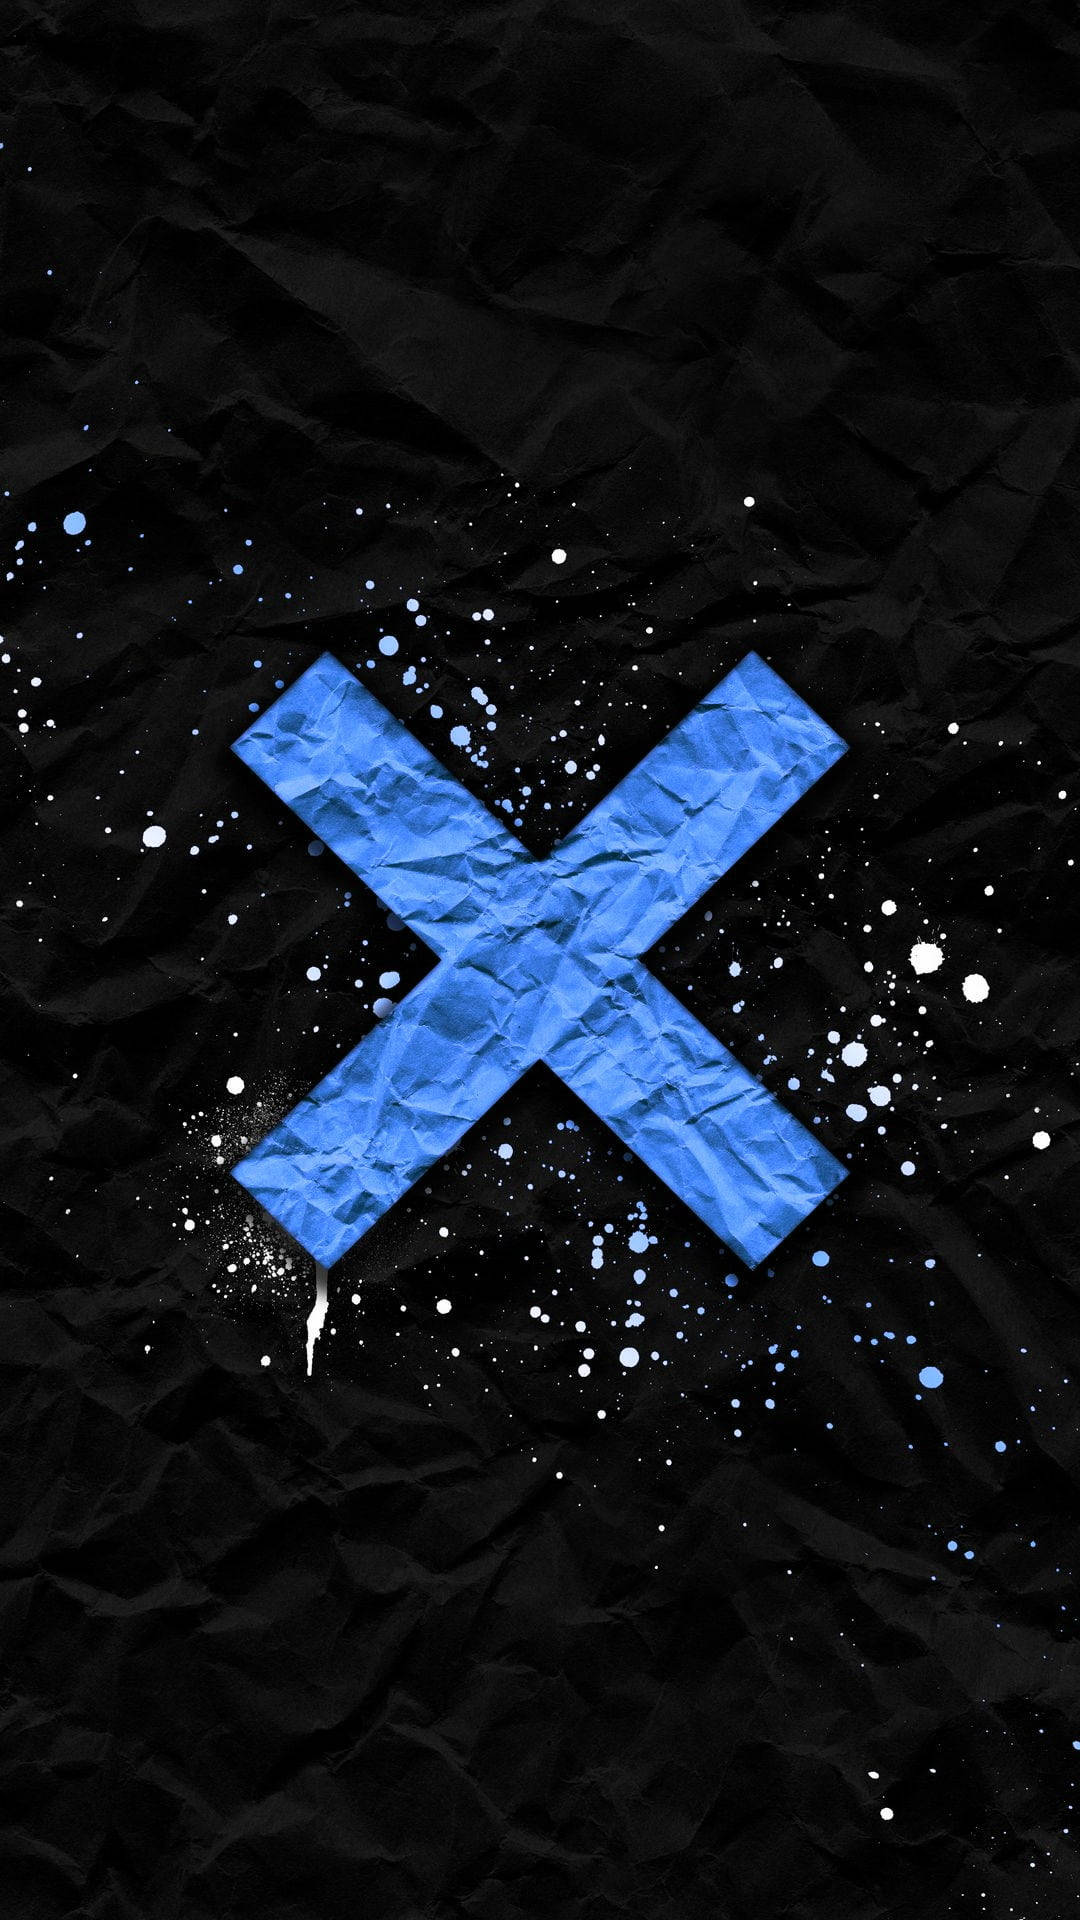 blue letter x